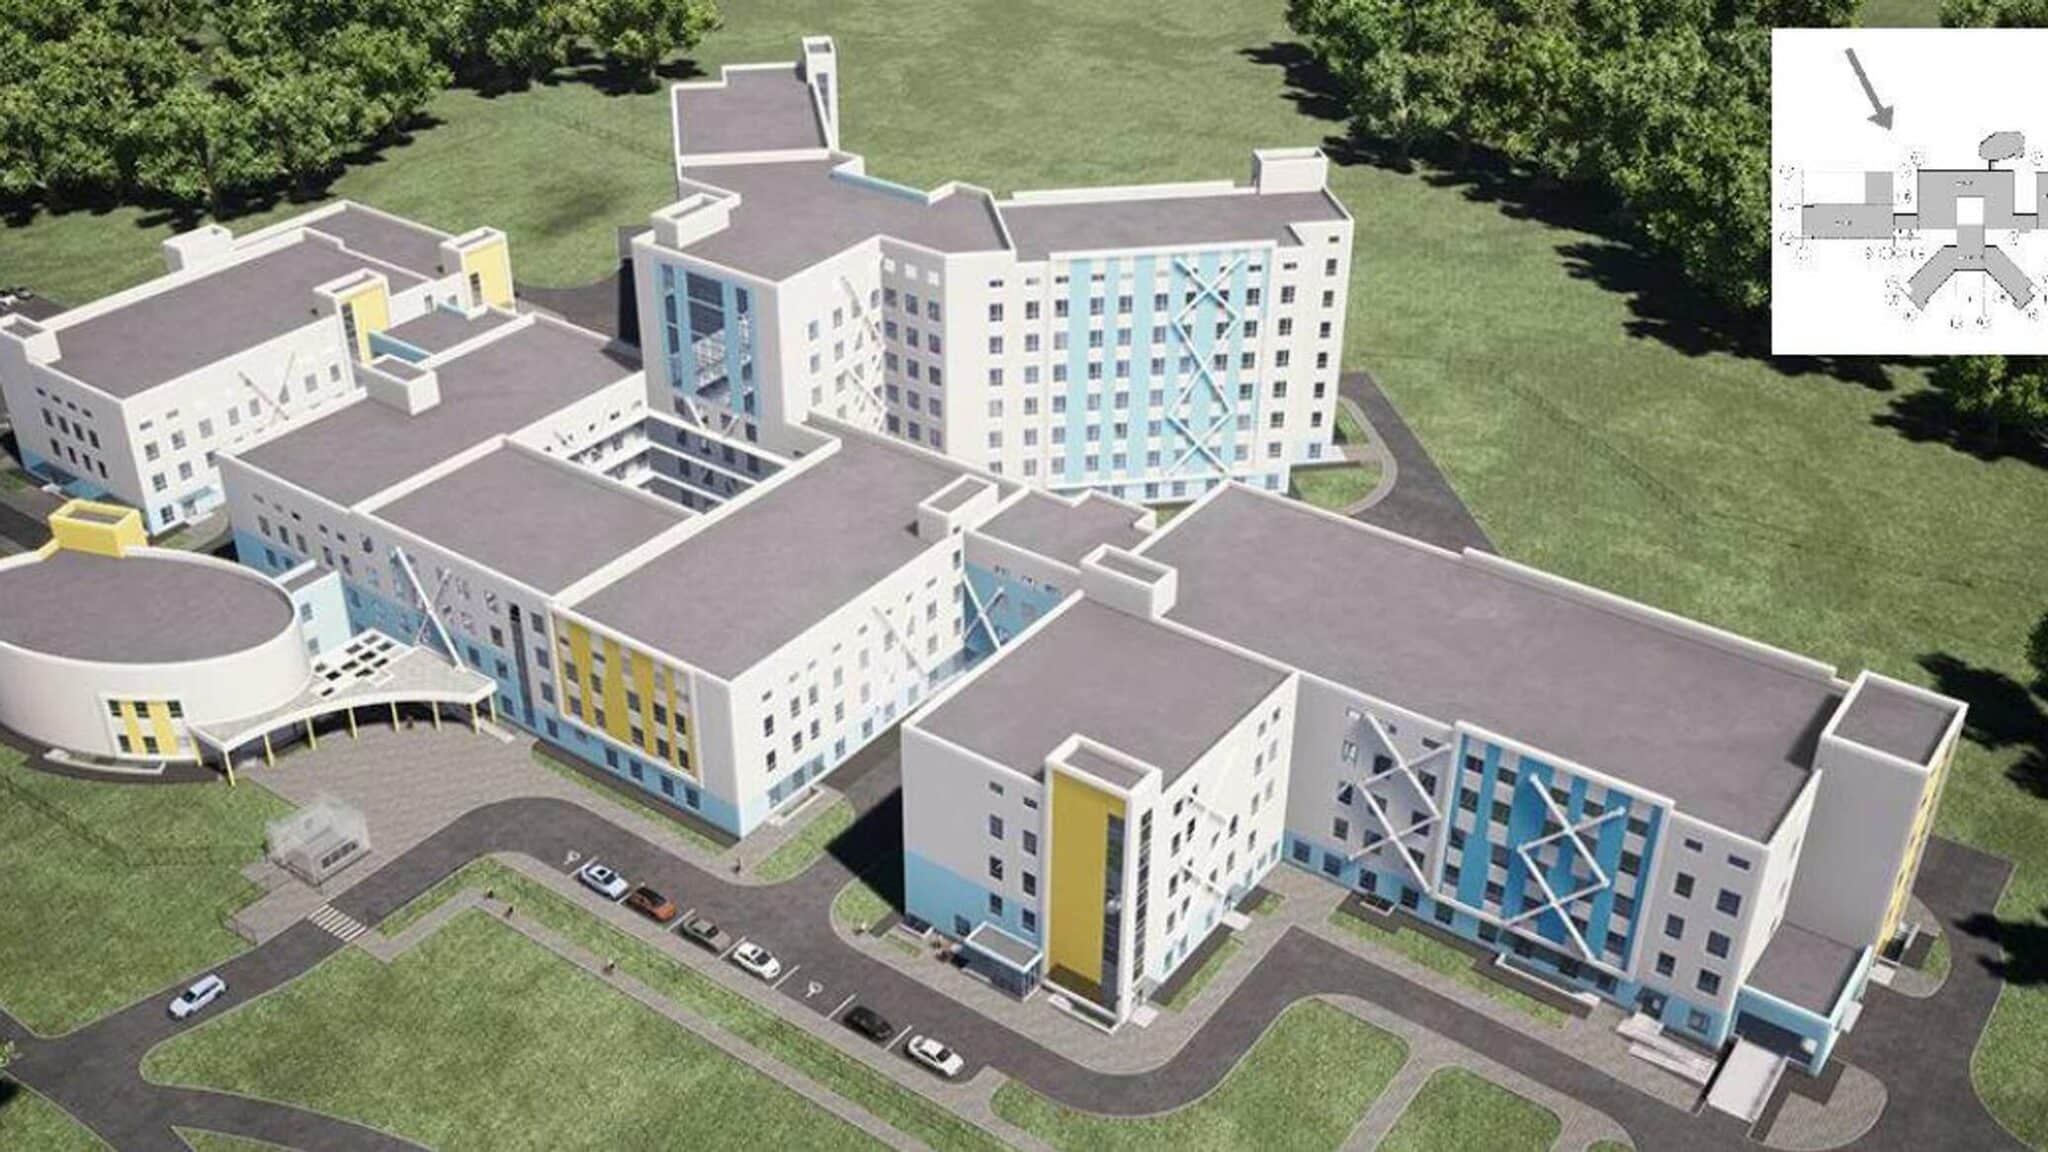 "Это не больница, а тюрьма!" - в Севастополе раскритиковали проект нового здания